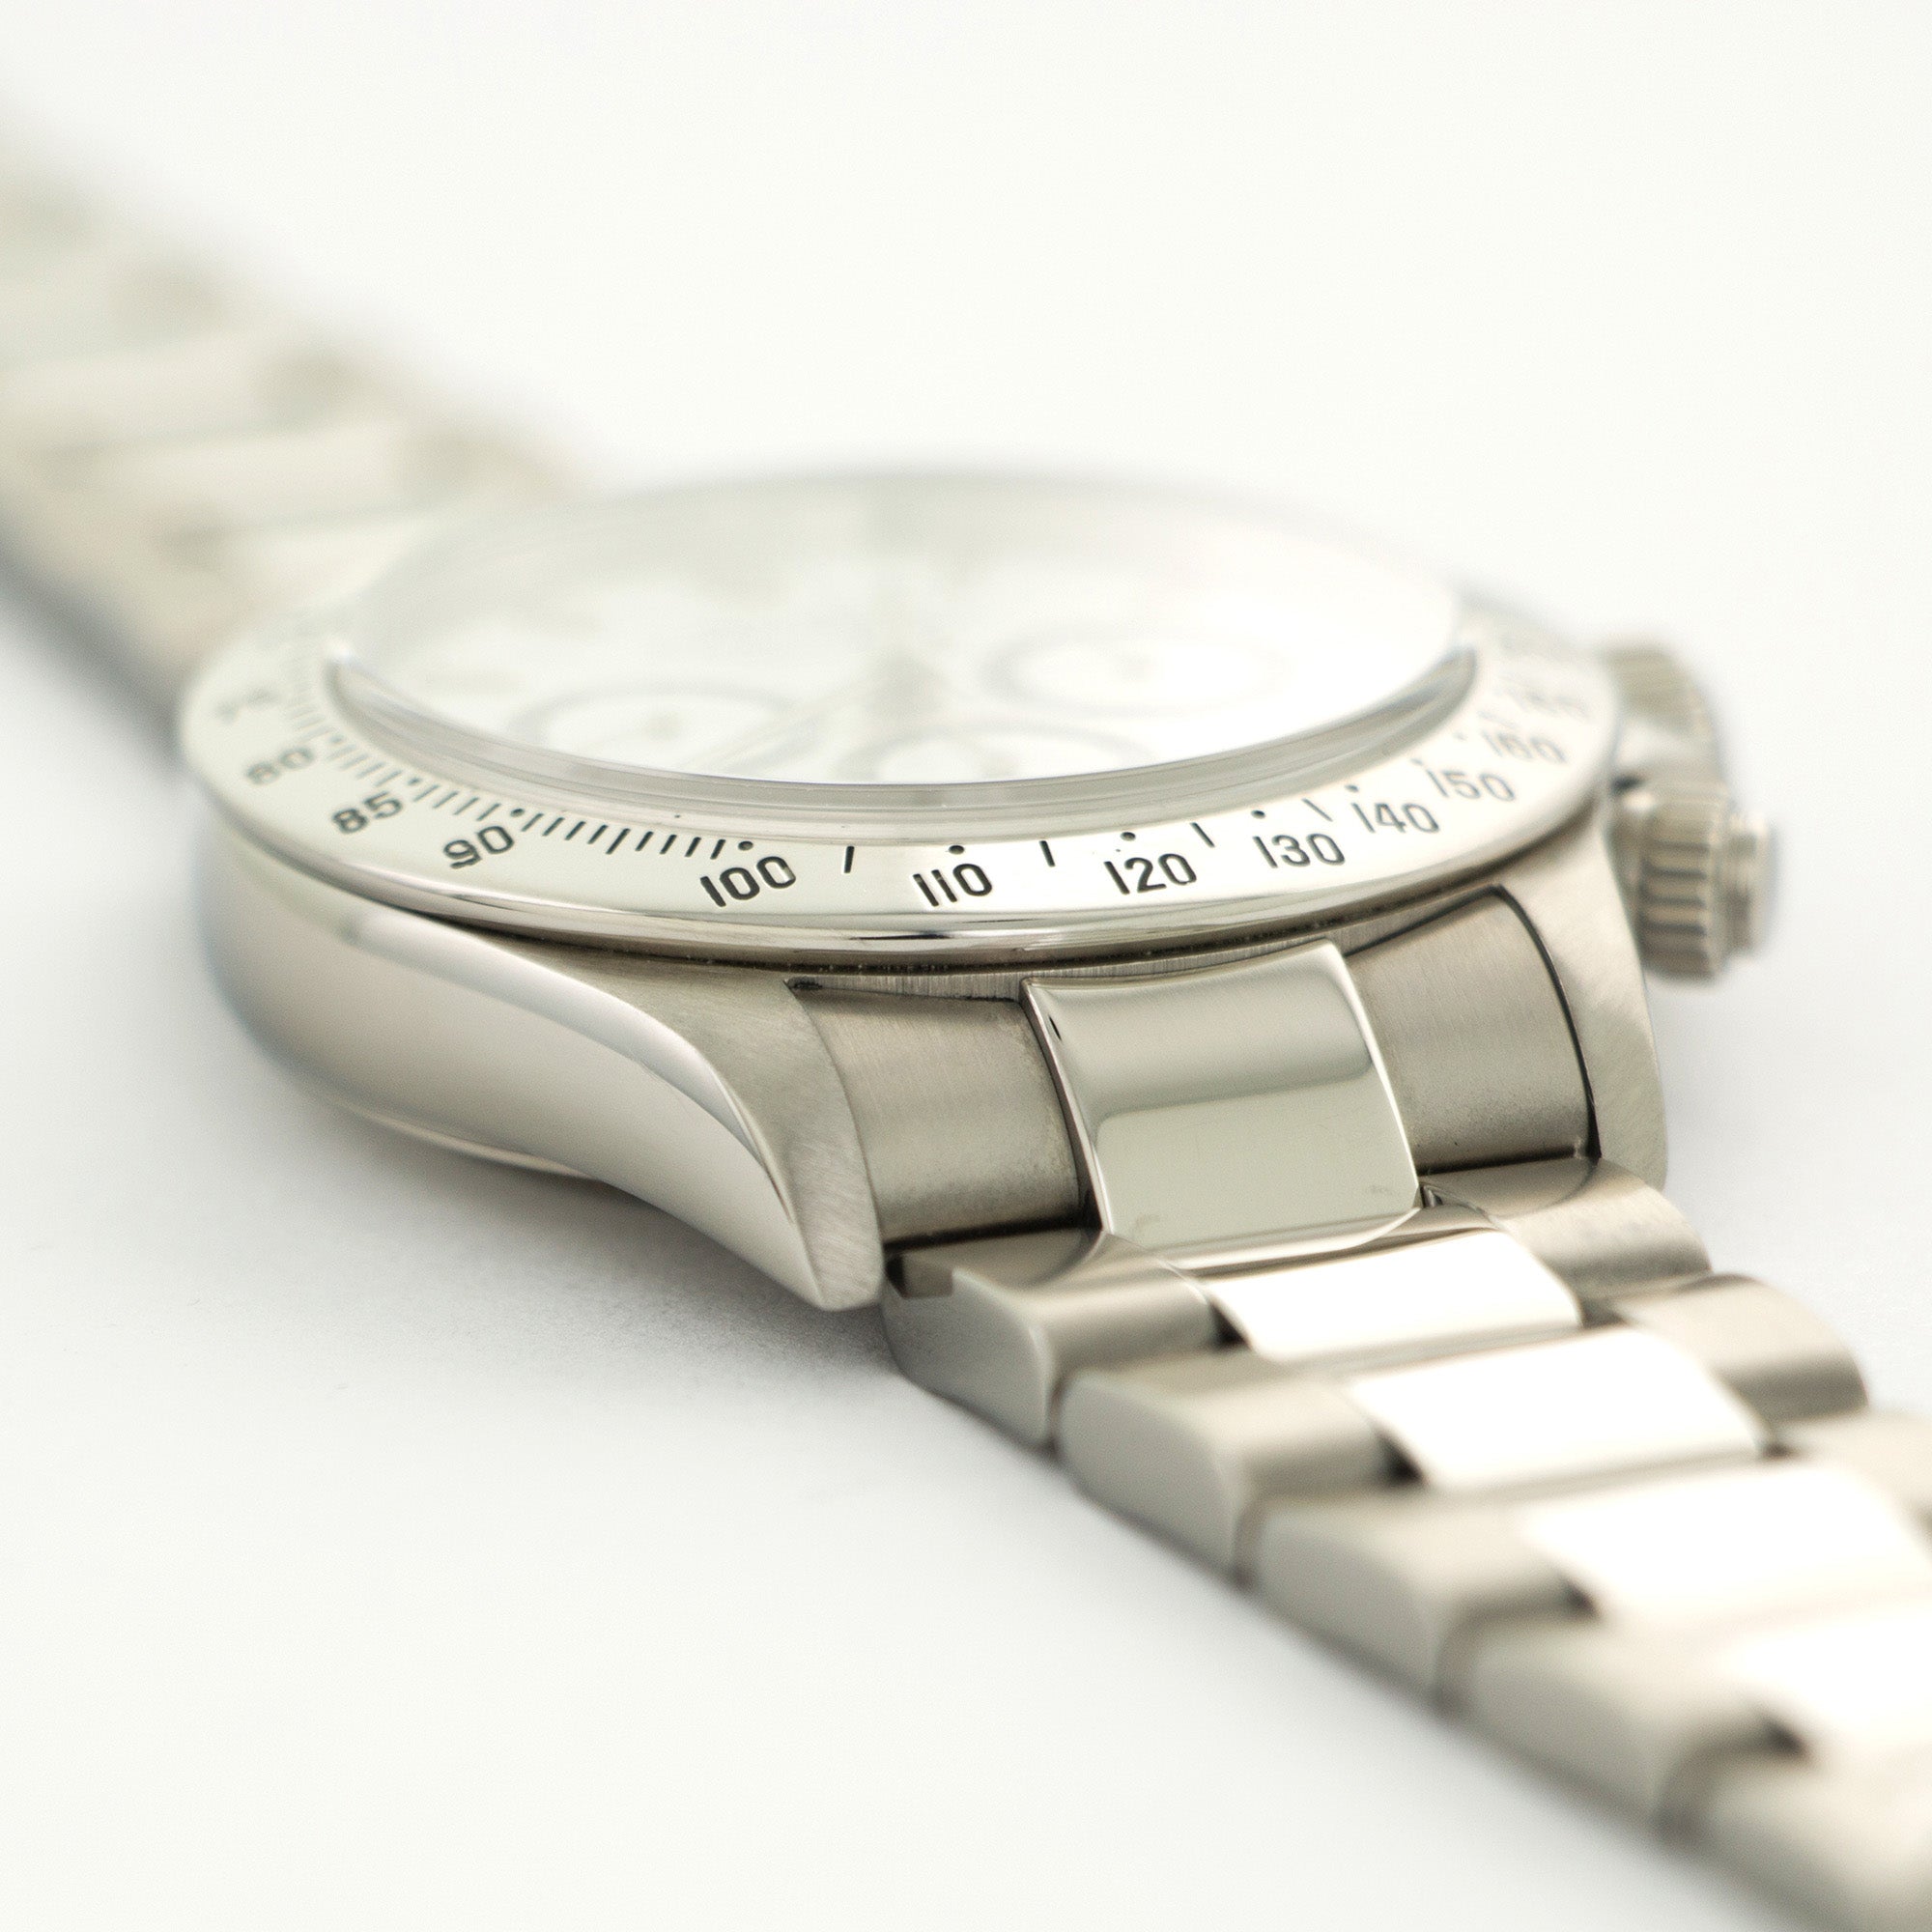 Rolex - Rolex Cosmograph Daytona P-Series Zenith Watch Ref. 16520 - The Keystone Watches